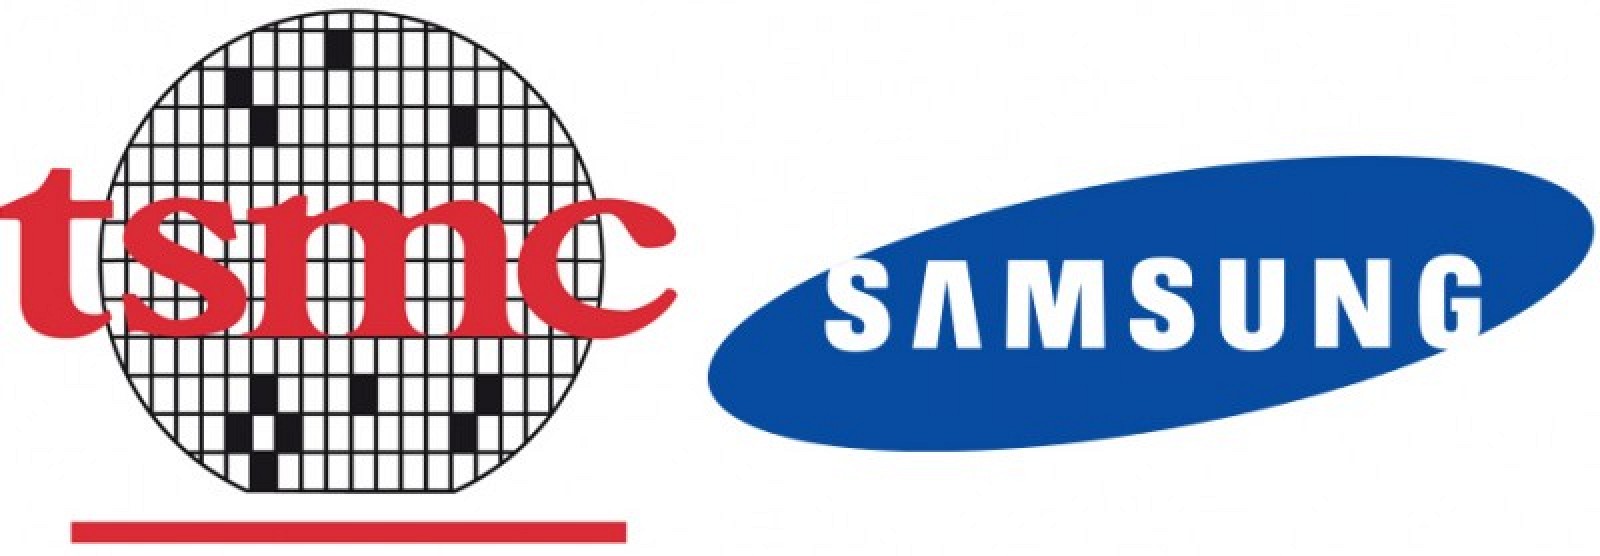 TSMC hạ Samsung, trở thành nhà sản xuất độc quyền chip A12 cho iPhone trong năm 2018